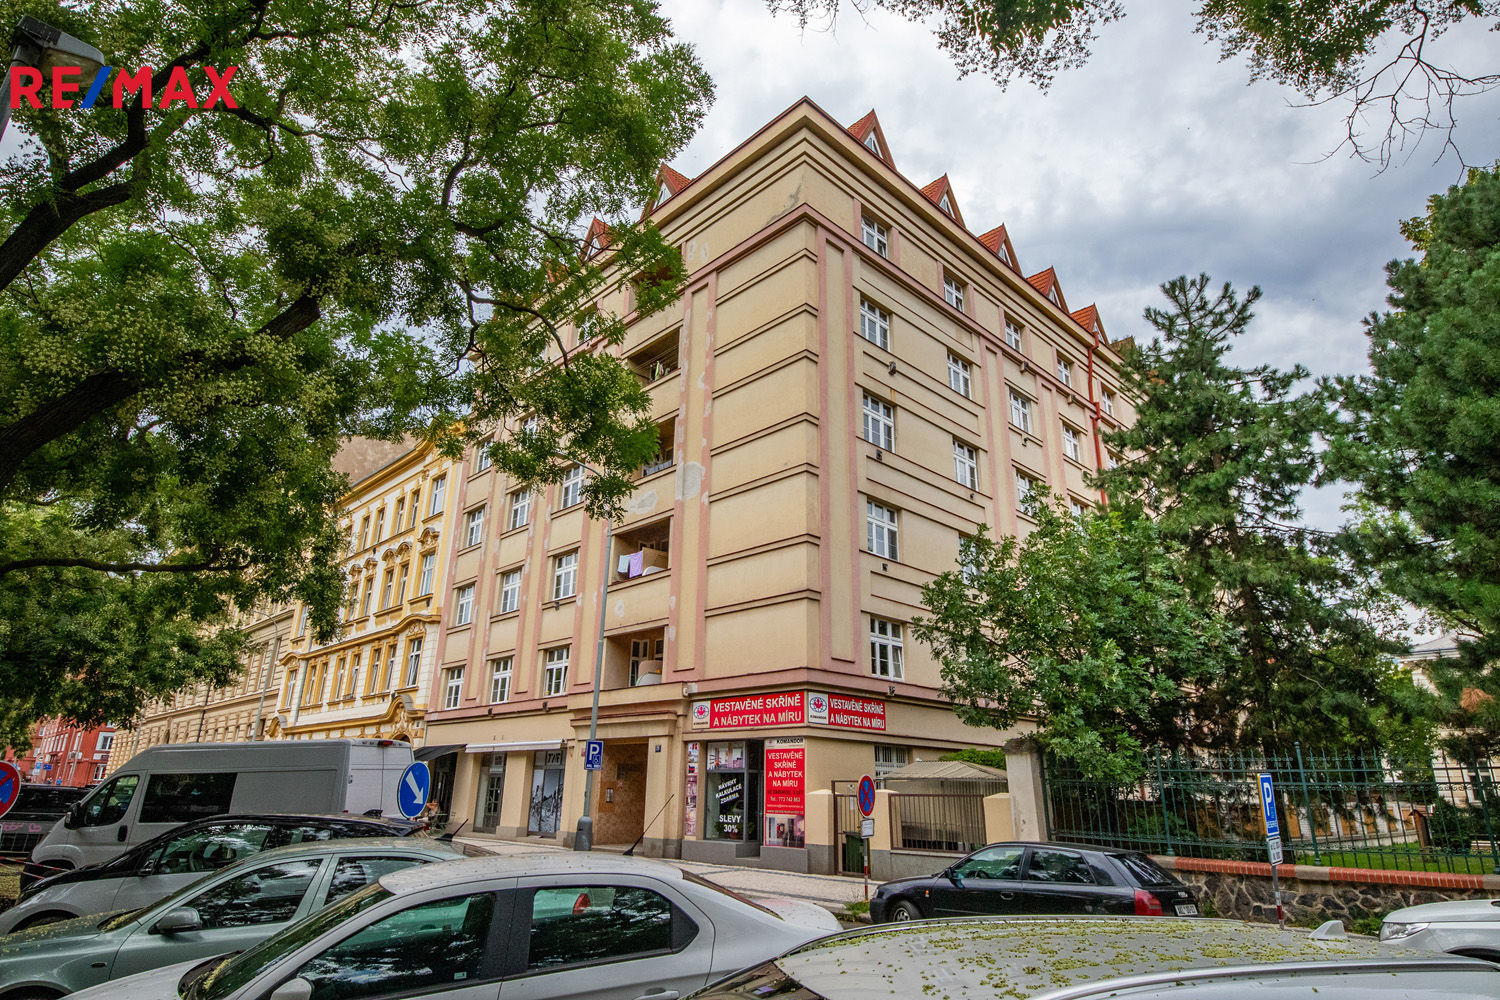 Prodej bytu 4+kk v osobním vlastnictví, 148 m2, Praha 7 - Holešovice